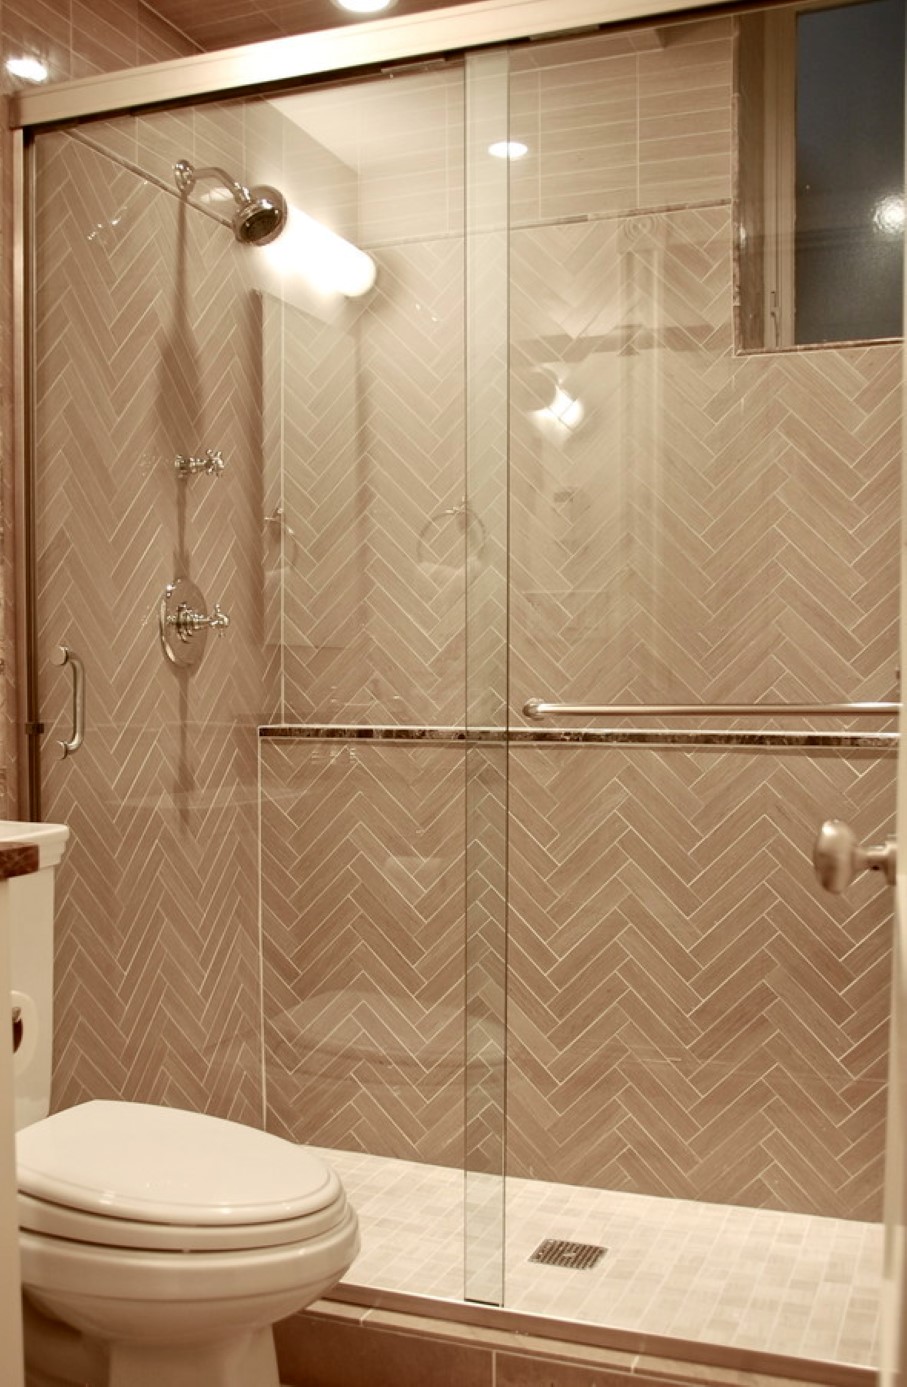 Herringbone Bathroom Pattern Captivating Herringbone Bathroom Wall Tile Pattern Feat Smart Sliding Glass Shower Door And Two Piece Toilet Bathroom  Sliding Door Model For Exclusive Shower Time 